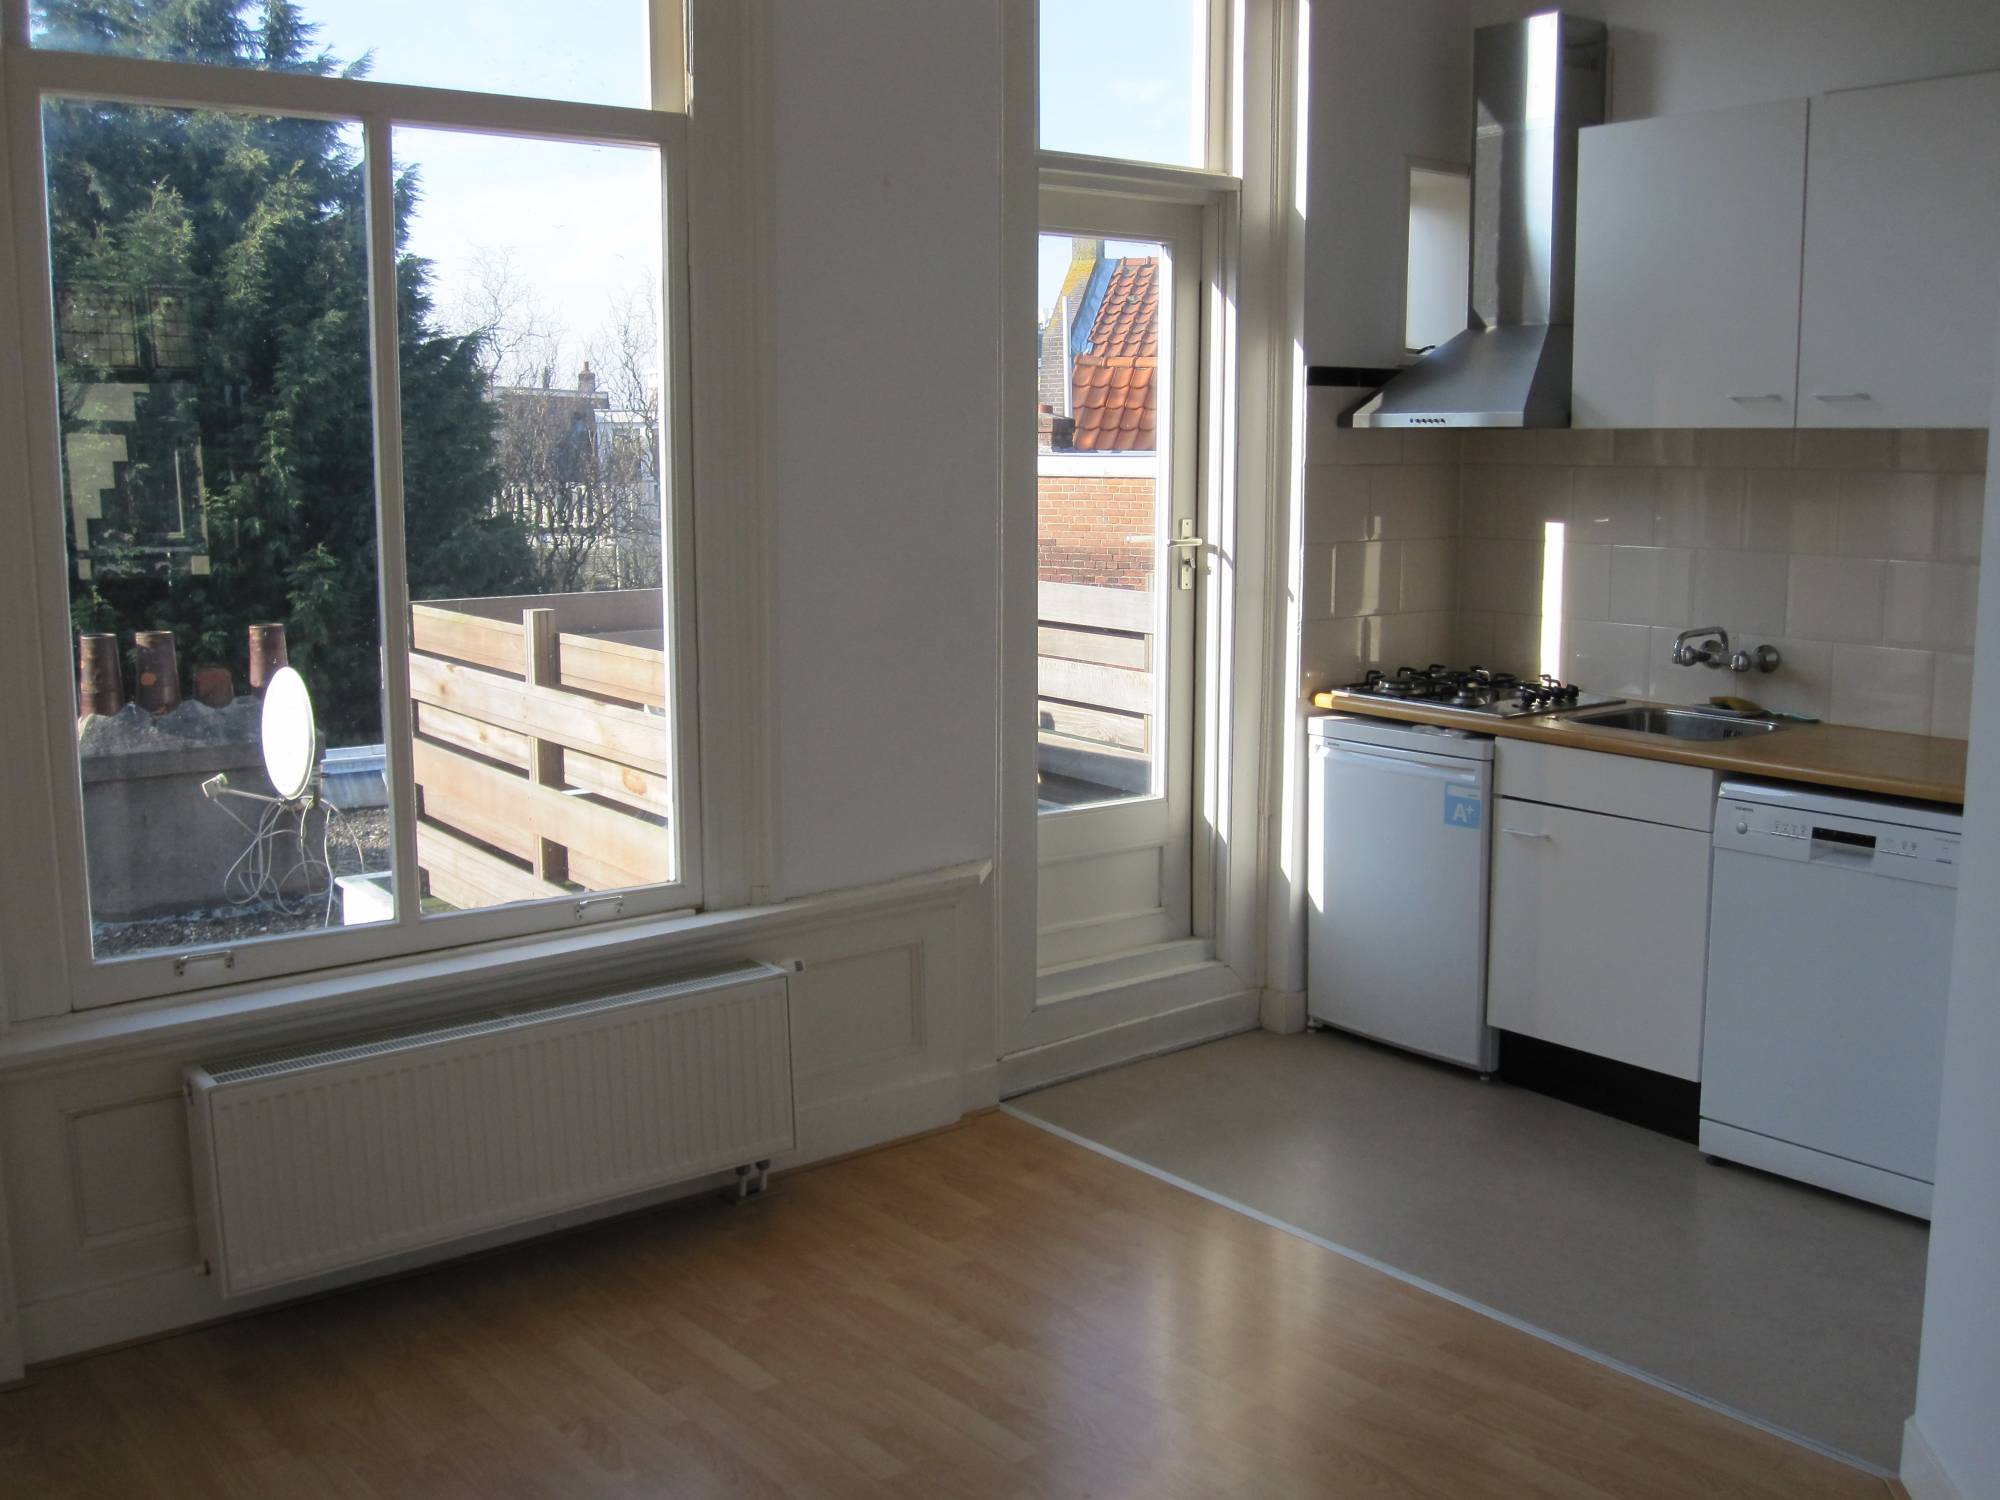 Bekijk foto 1/47 van apartment in Haarlem